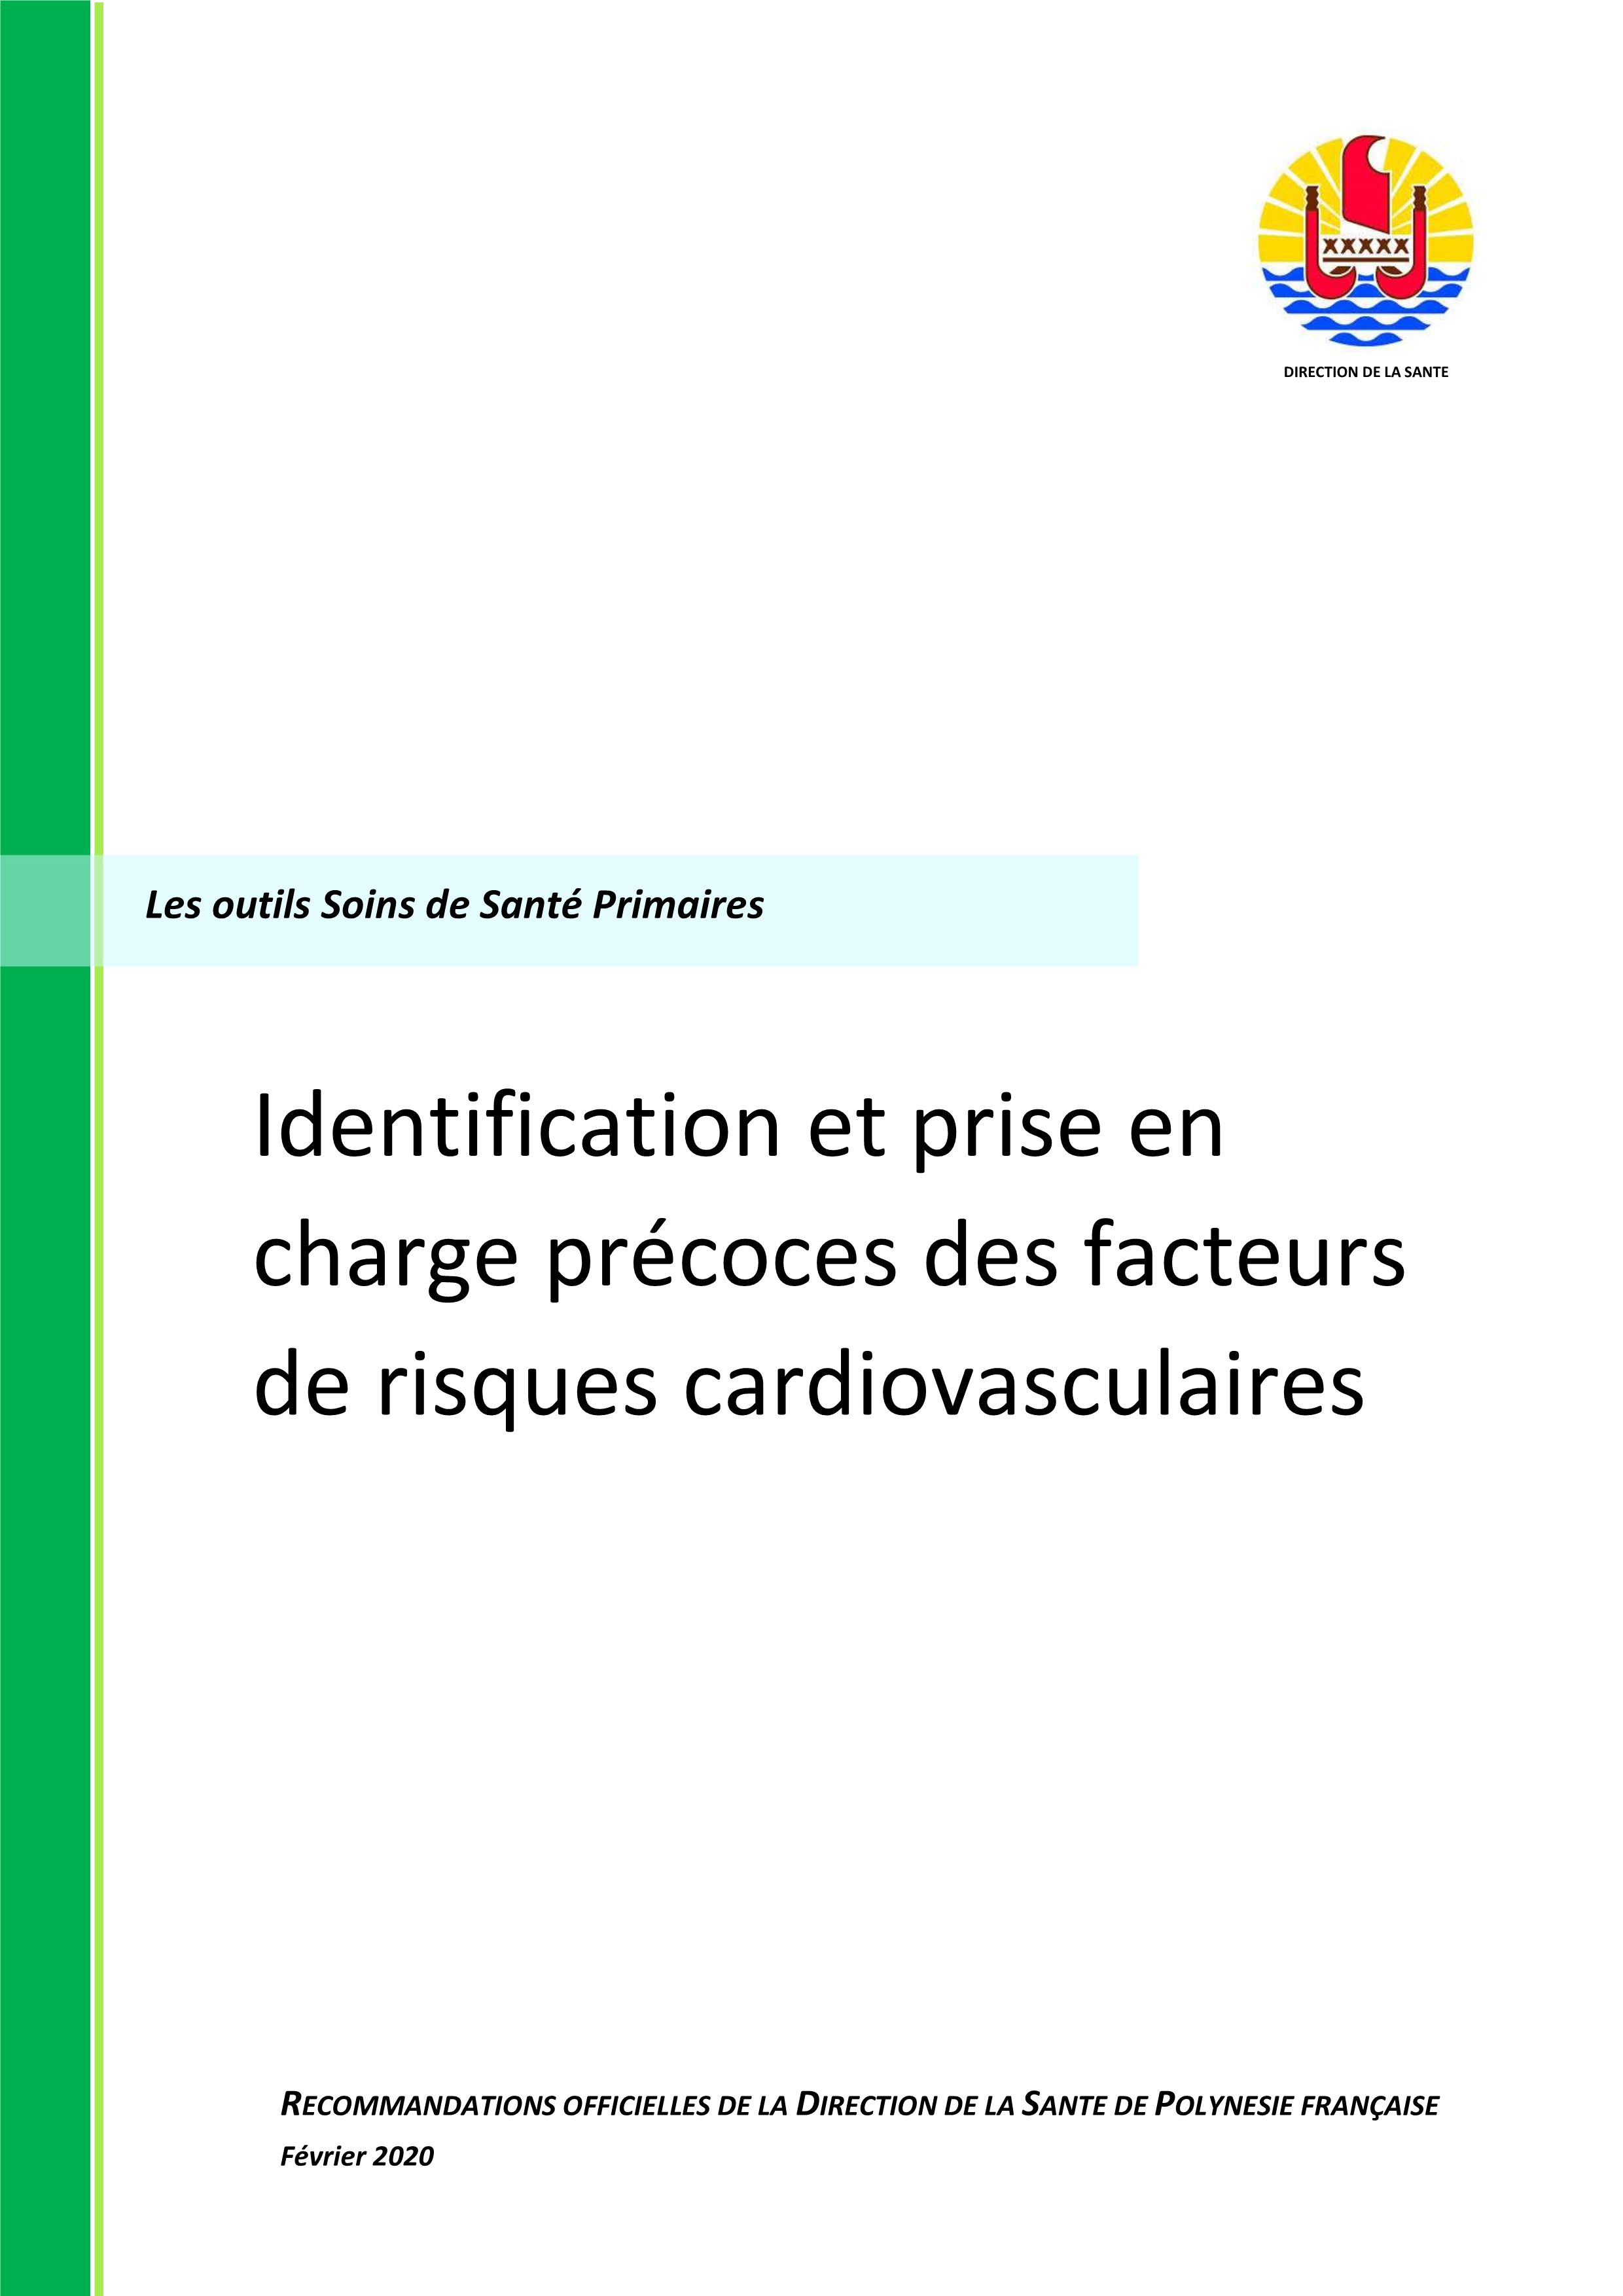 Outil soins de santé primaire - identification et prise en charge précoces des facteurs de risques cardiovasculaires